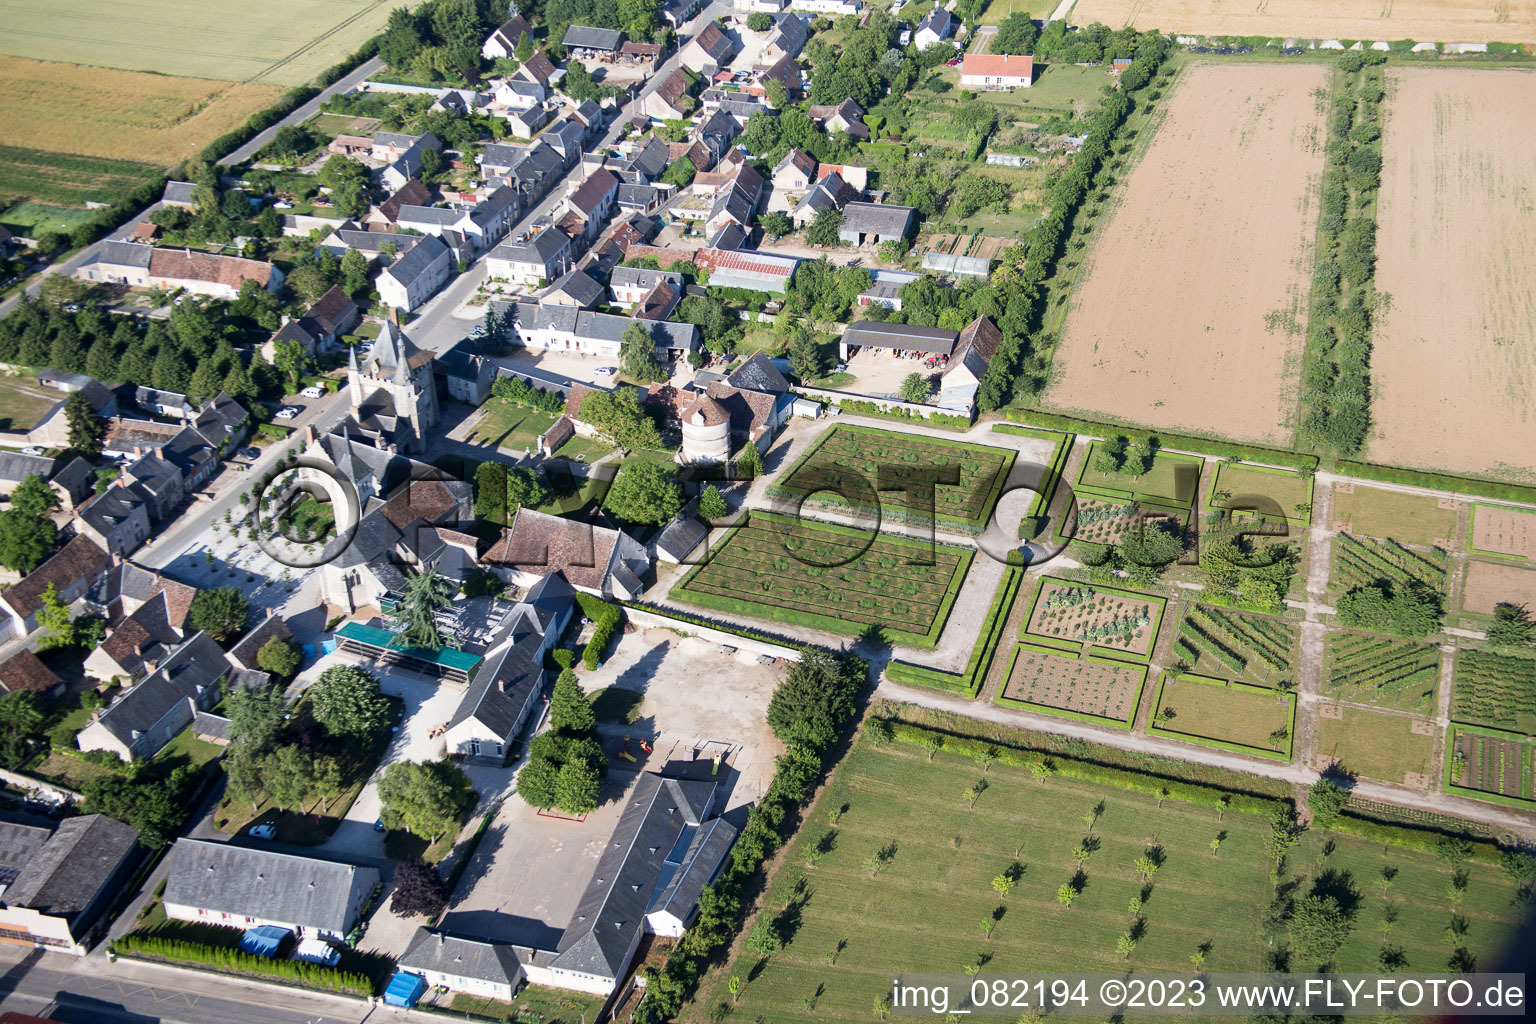 Talcy dans le département Loir et Cher, France vu d'un drone